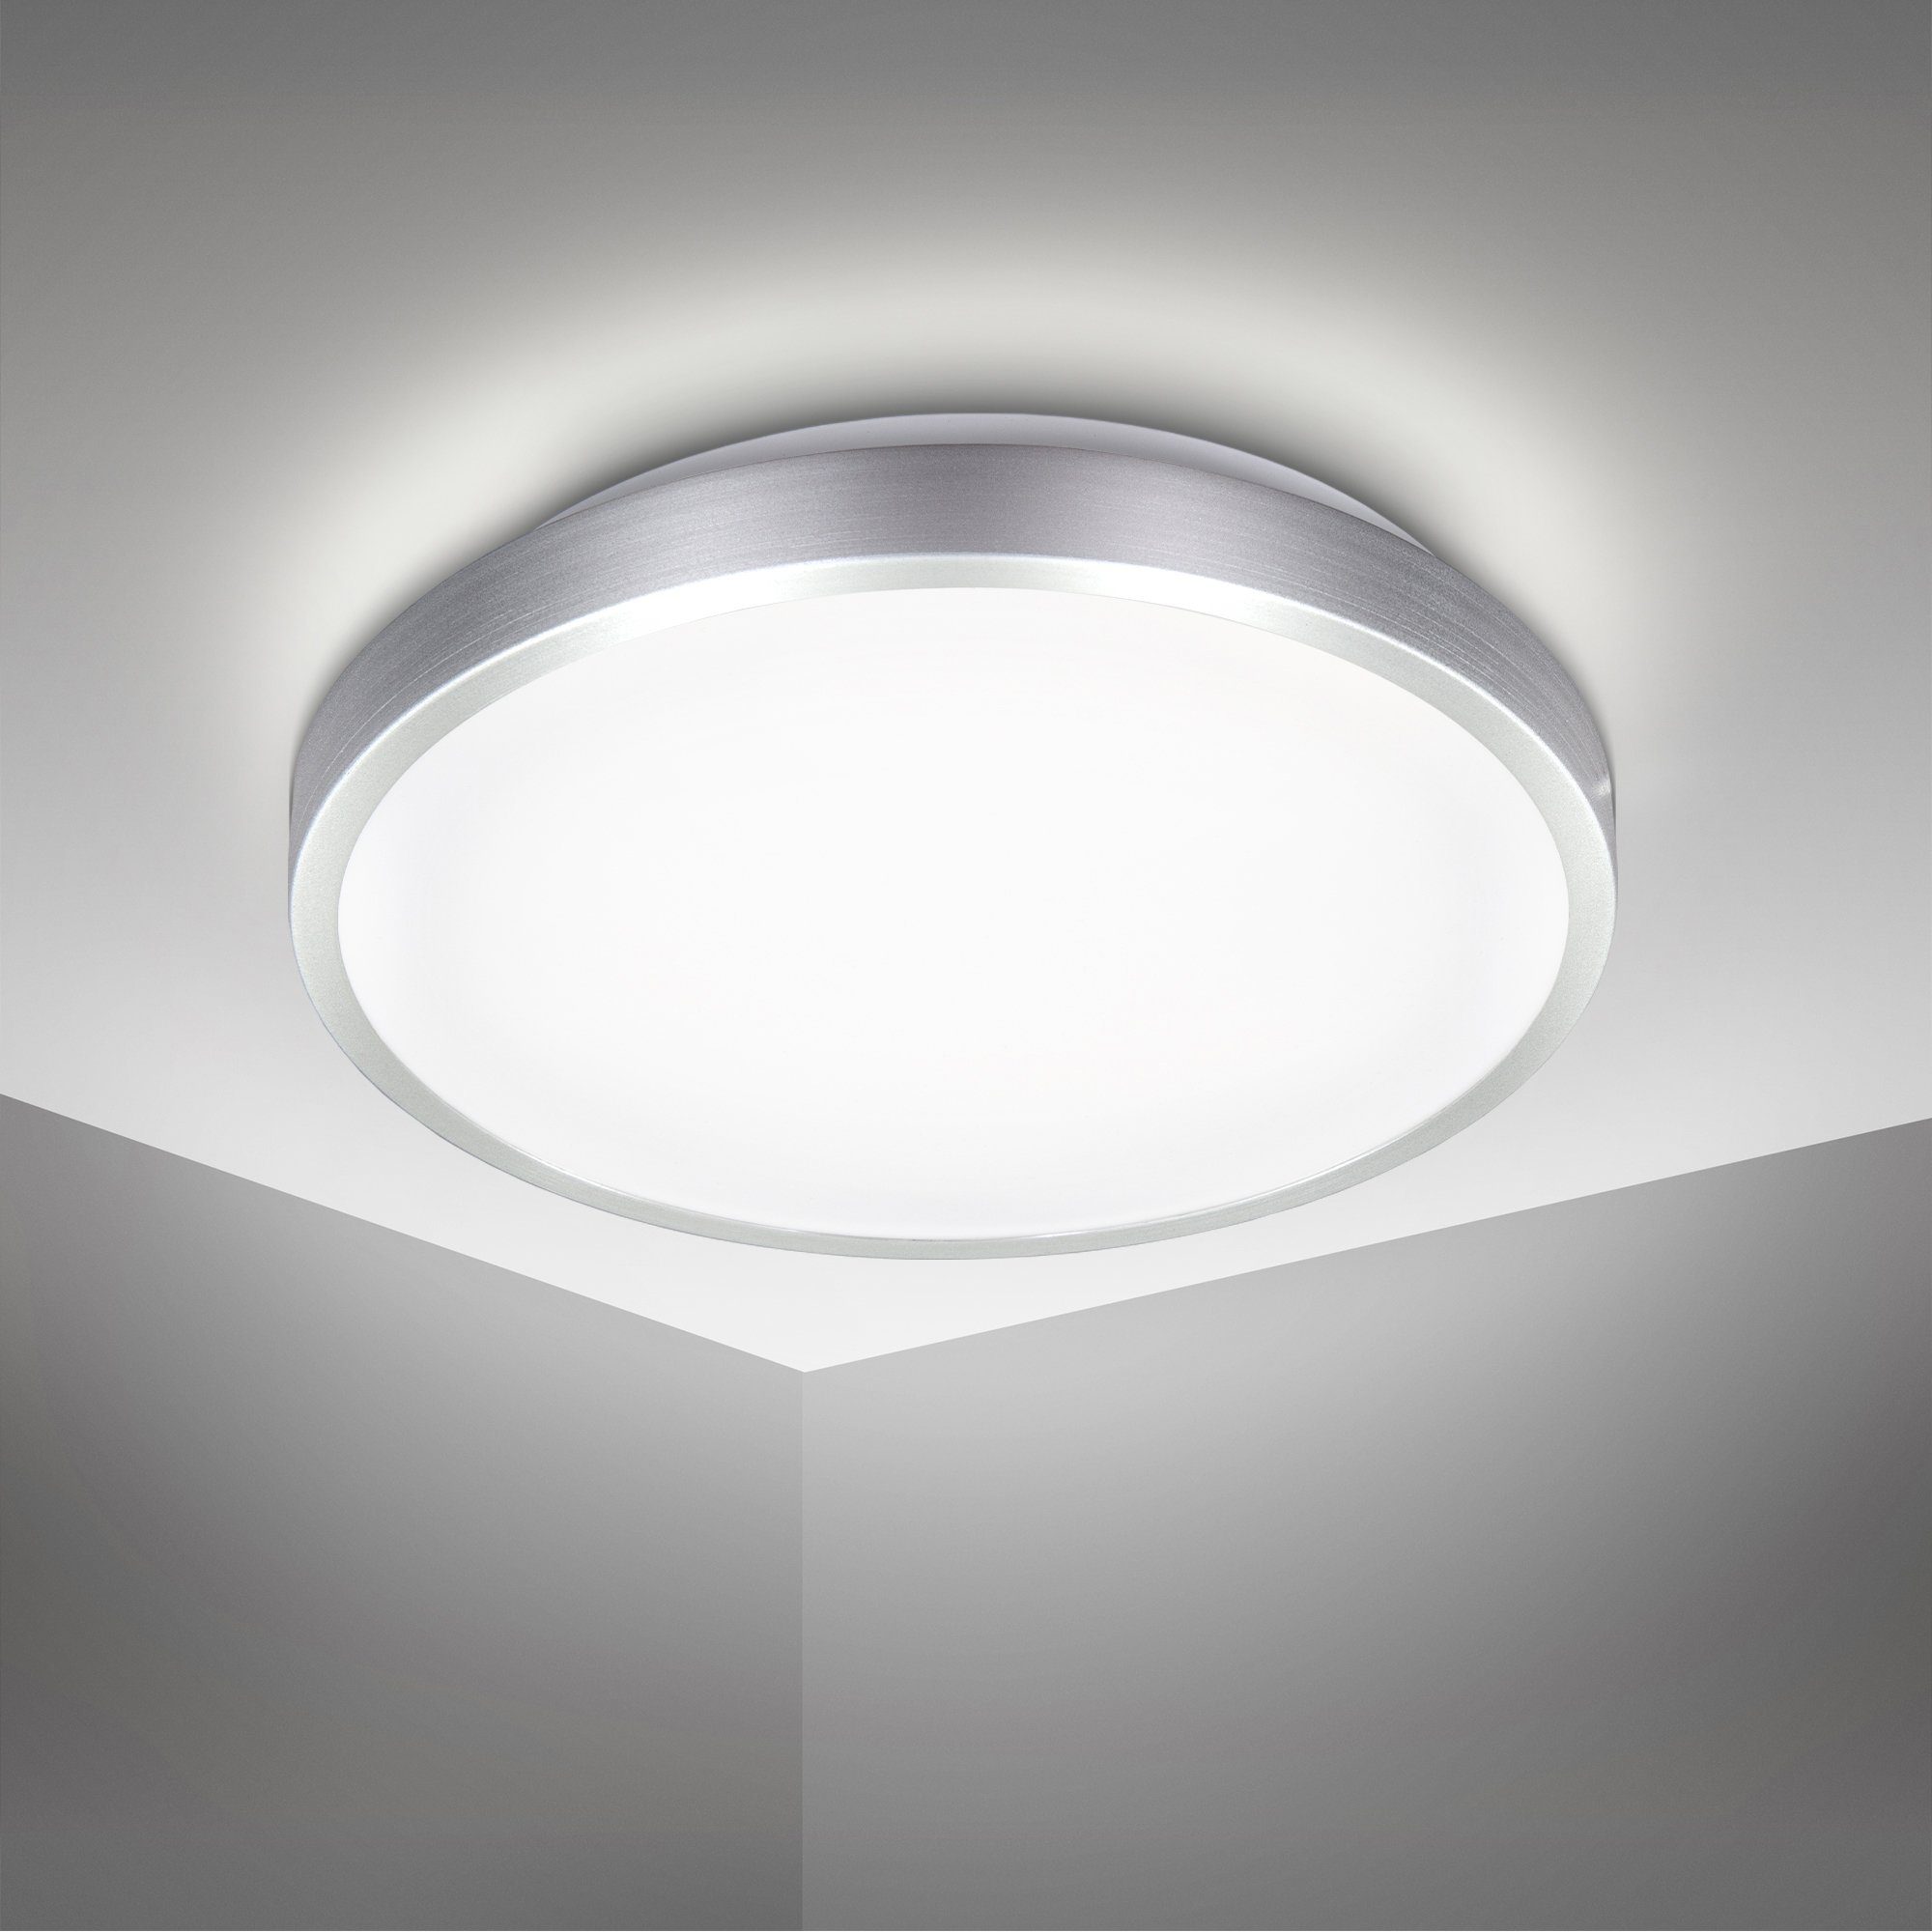 Luxus Decken Lampe LED Büro Beleuchtung gewellt 12 Watt Flur Leuchte Big Light 